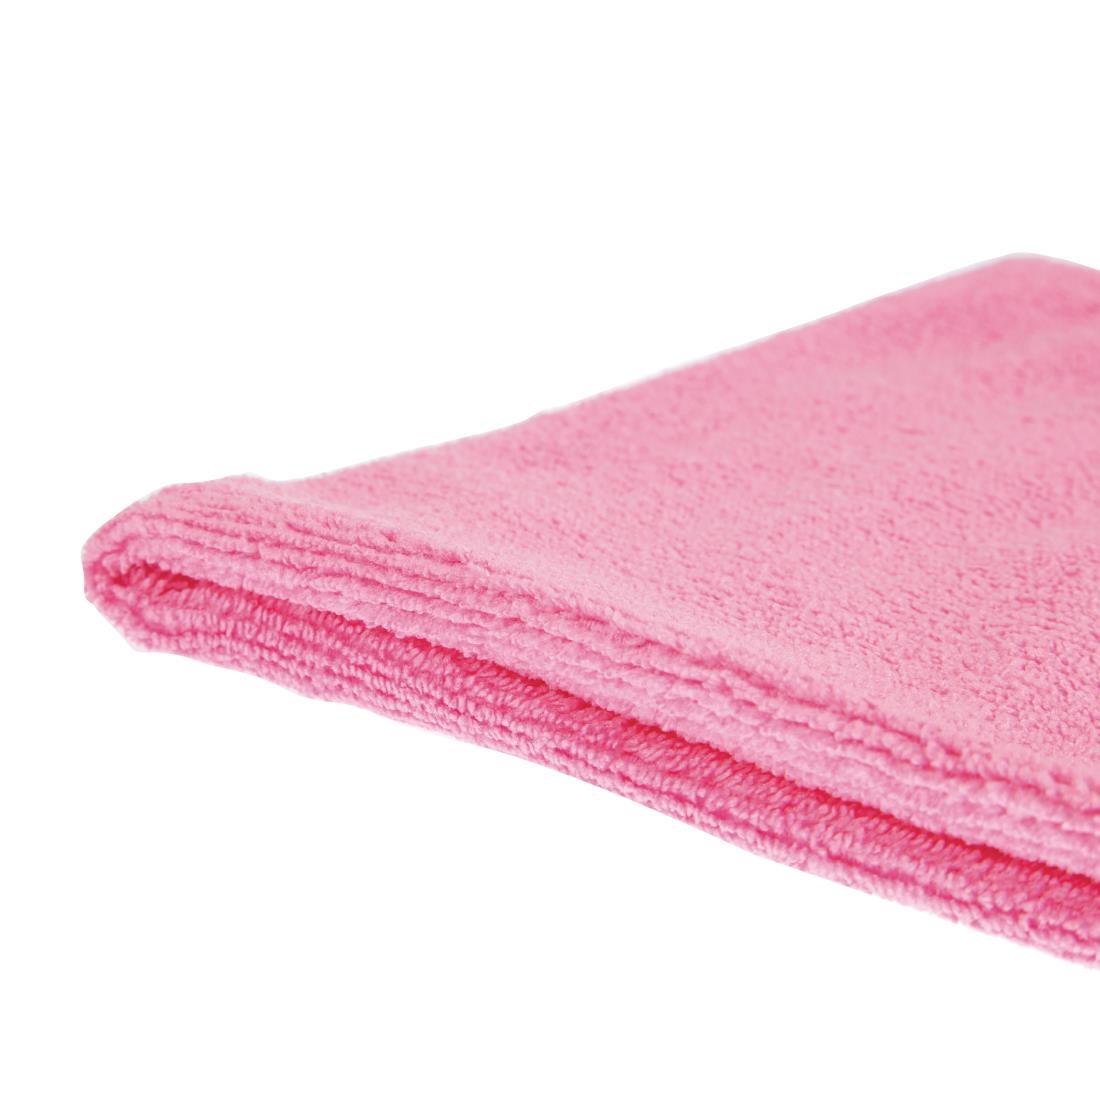 Jantex Microfibre Cloths Pink (Pack of 5) - DN840  - 3